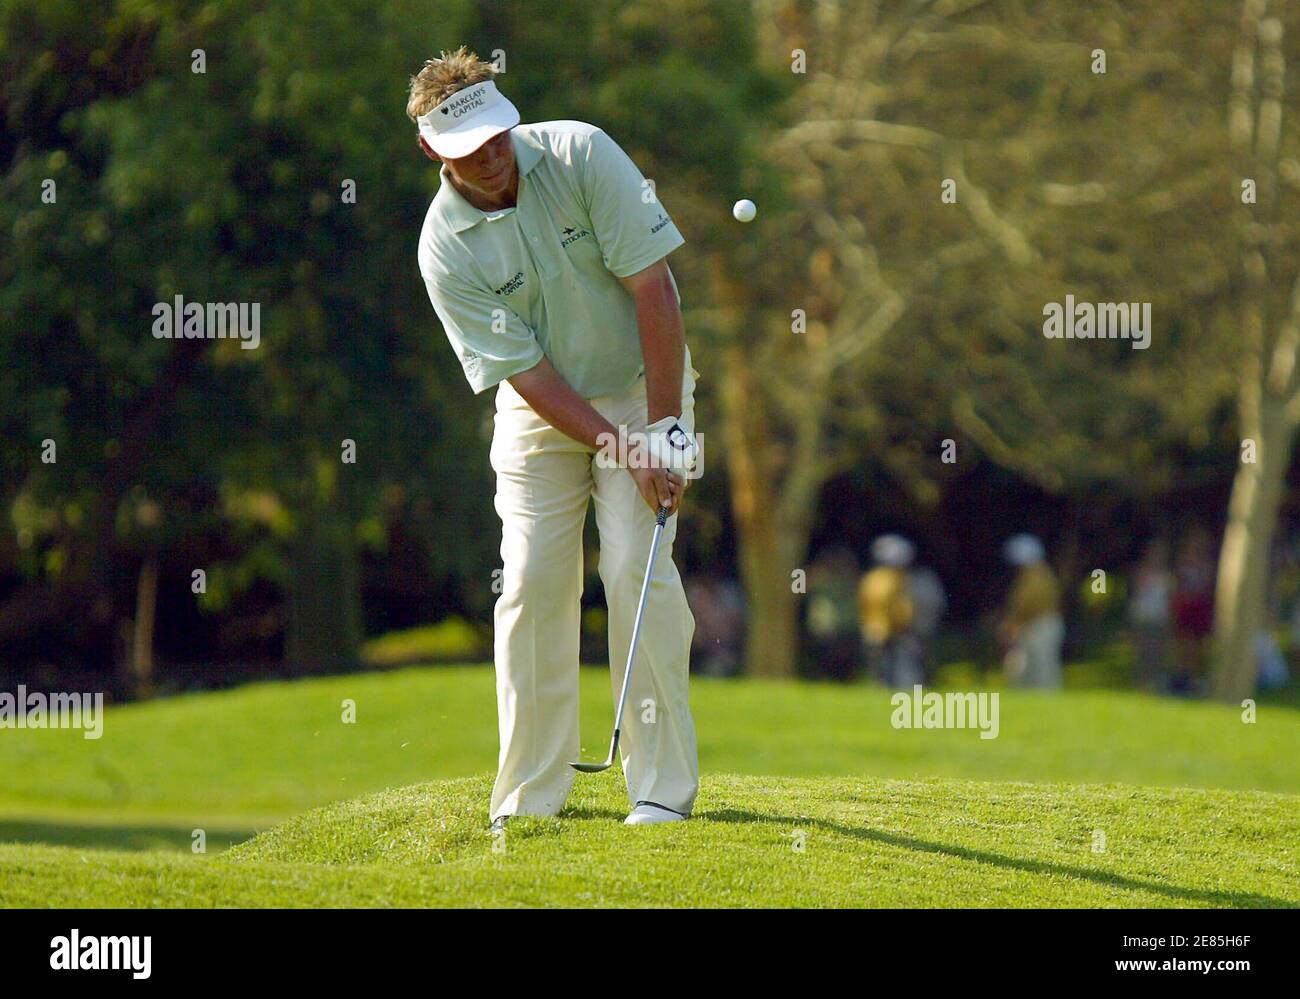 Großbritanniens Darren Clarke spielt einen Schuss auf das 18. Loch in der zweiten Runde der $ 4 Millionen Sun City Golf Challenge in Sun City, Südafrika 2. Dezember 2005. Clarke wurde bei sieben unter Abs. REUTERS/Juda Ngwenya Stockfoto